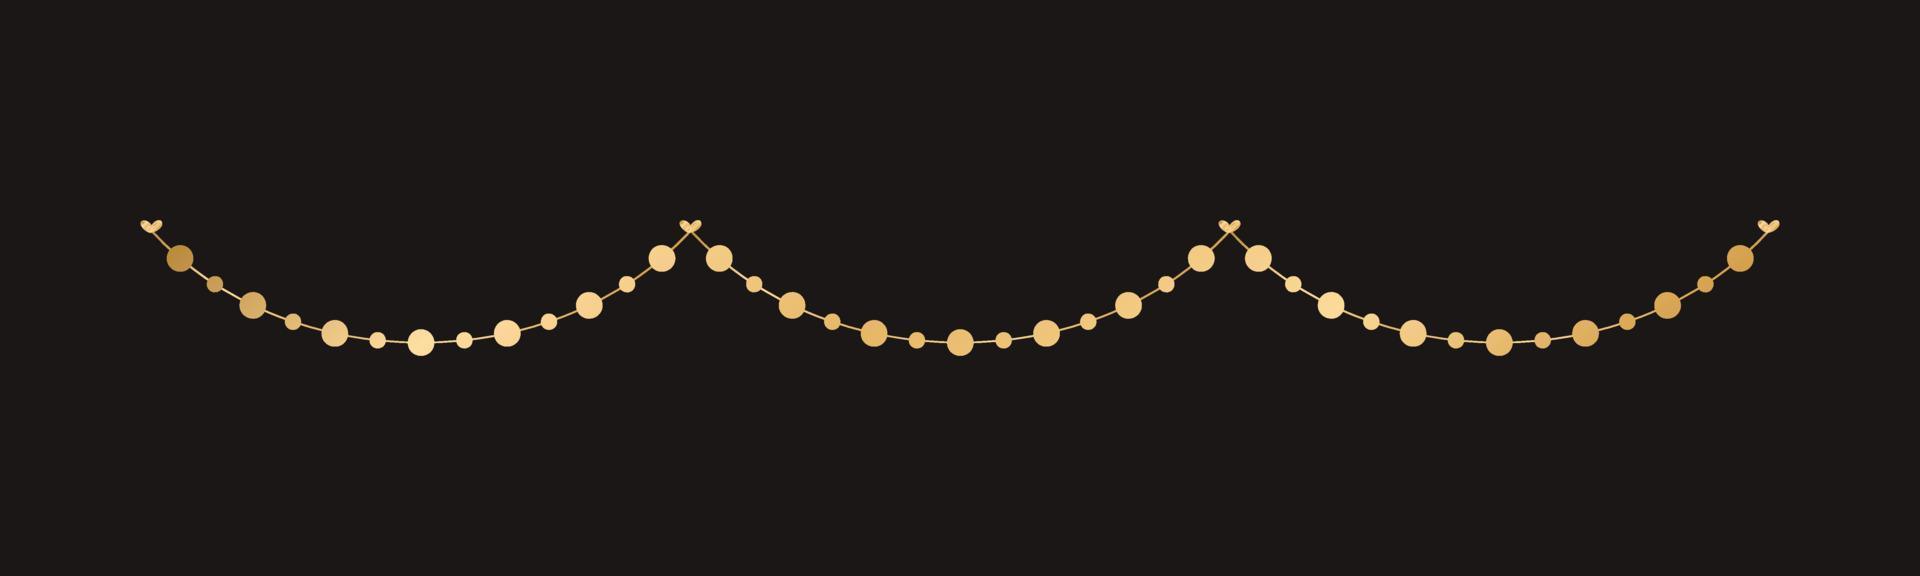 gouden lichten guirlande, feestelijk verjaardag, Kerstmis partij viering, hangende Gorzen slingers vector illustratie